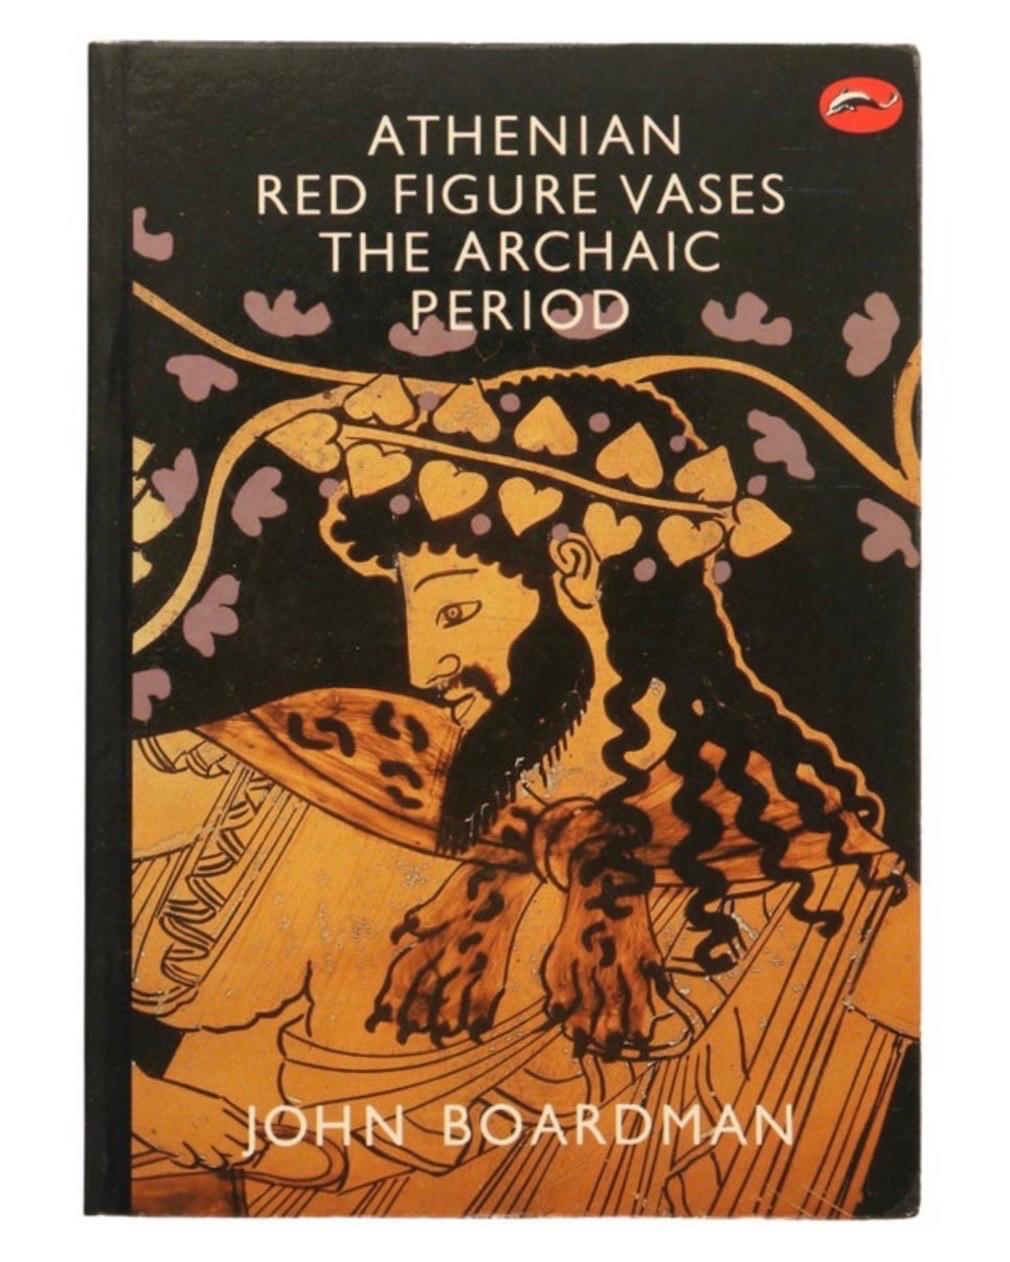 Vases à figures rouges athéniennes, période archaïque